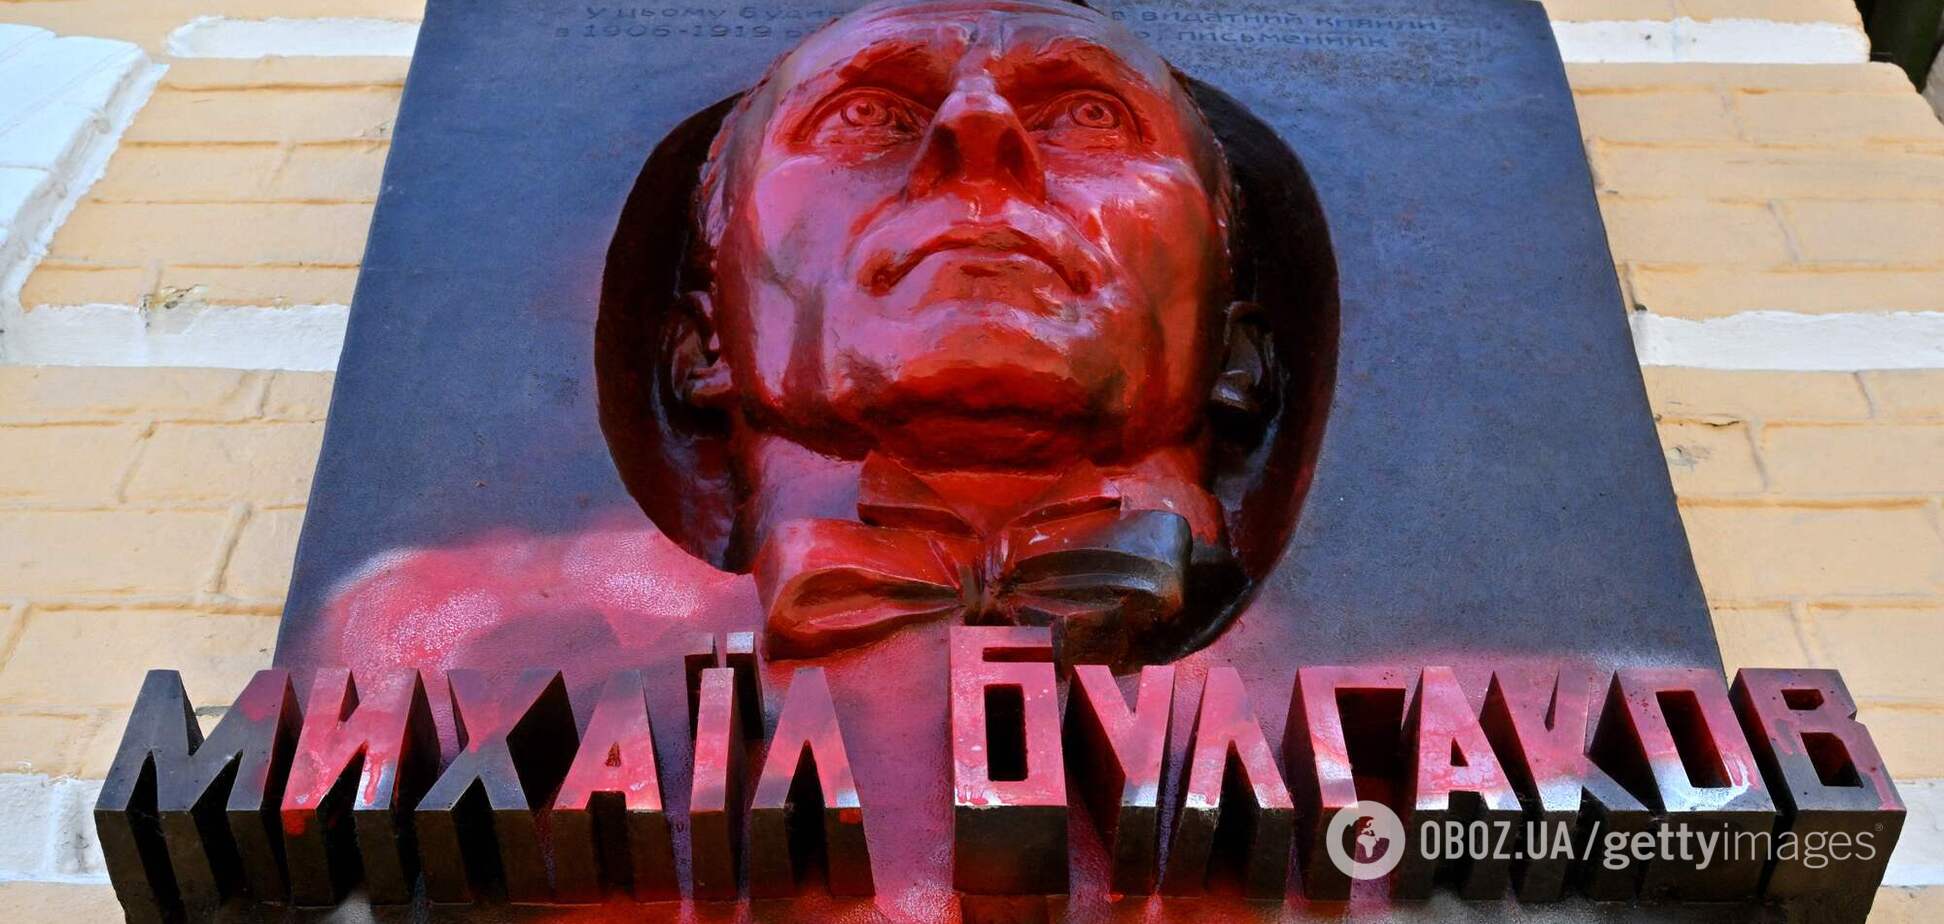 Інститут національної пам'яті визнав Михайла Булгакова символом російської імперської політики, а пам'ятники йому – пропагандою